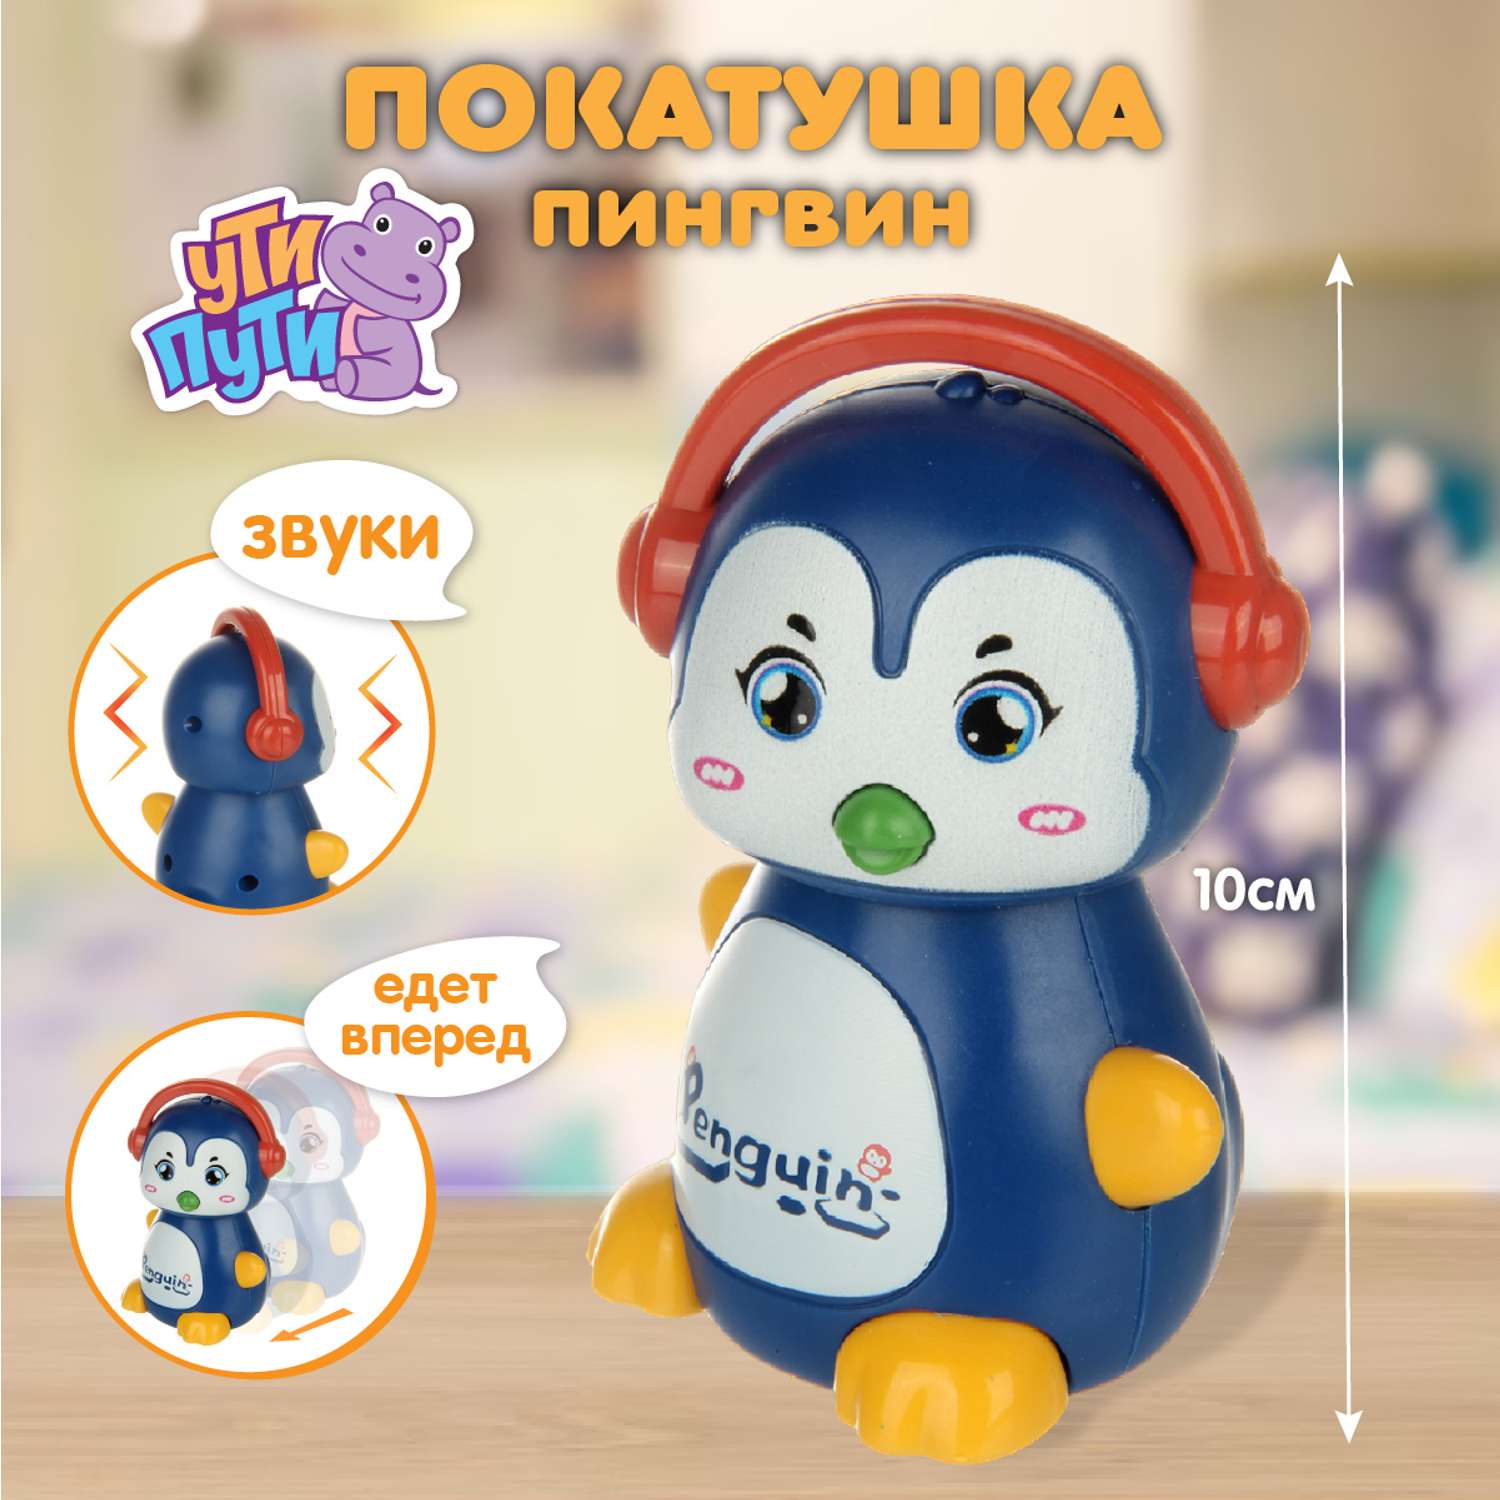 Развивающая игрушка Ути Пути Покатушка Пингвин со звуками - фото 2